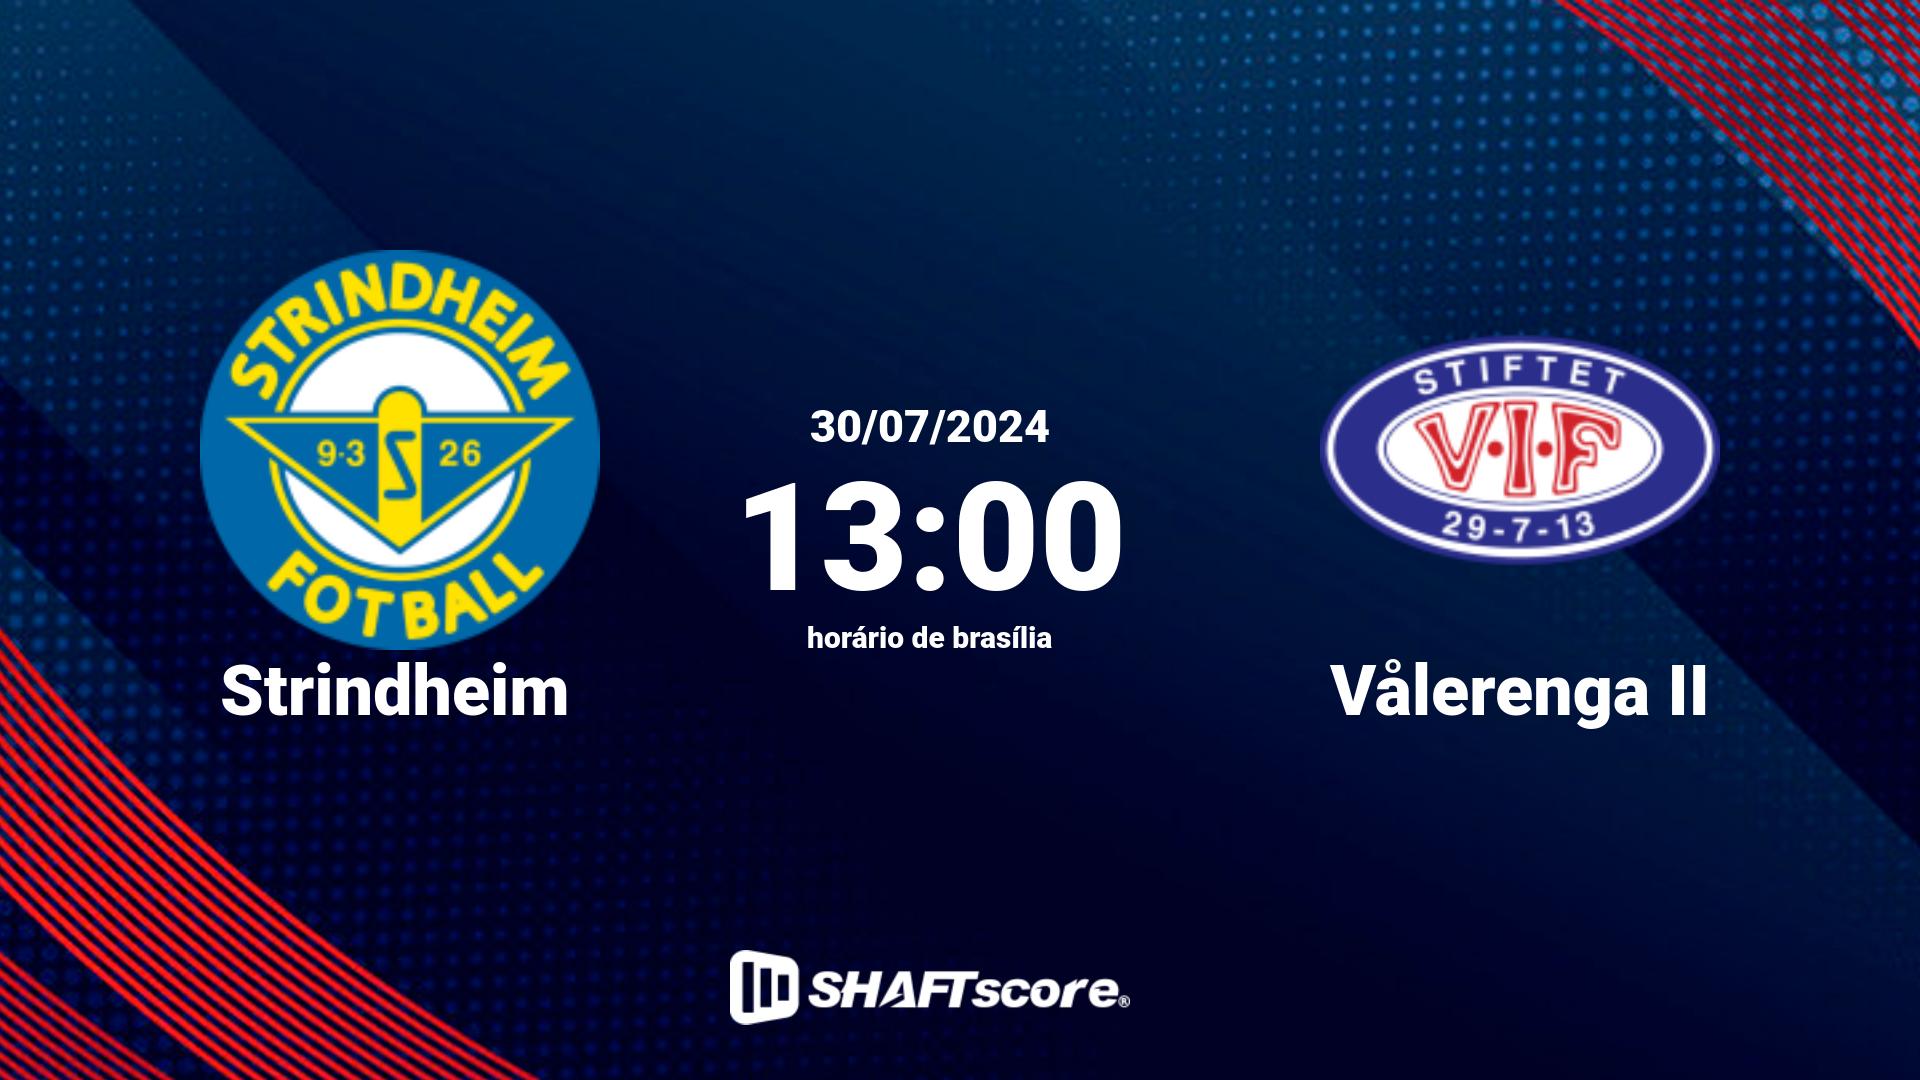 Estatísticas do jogo Strindheim vs Vålerenga II 30.07 13:00